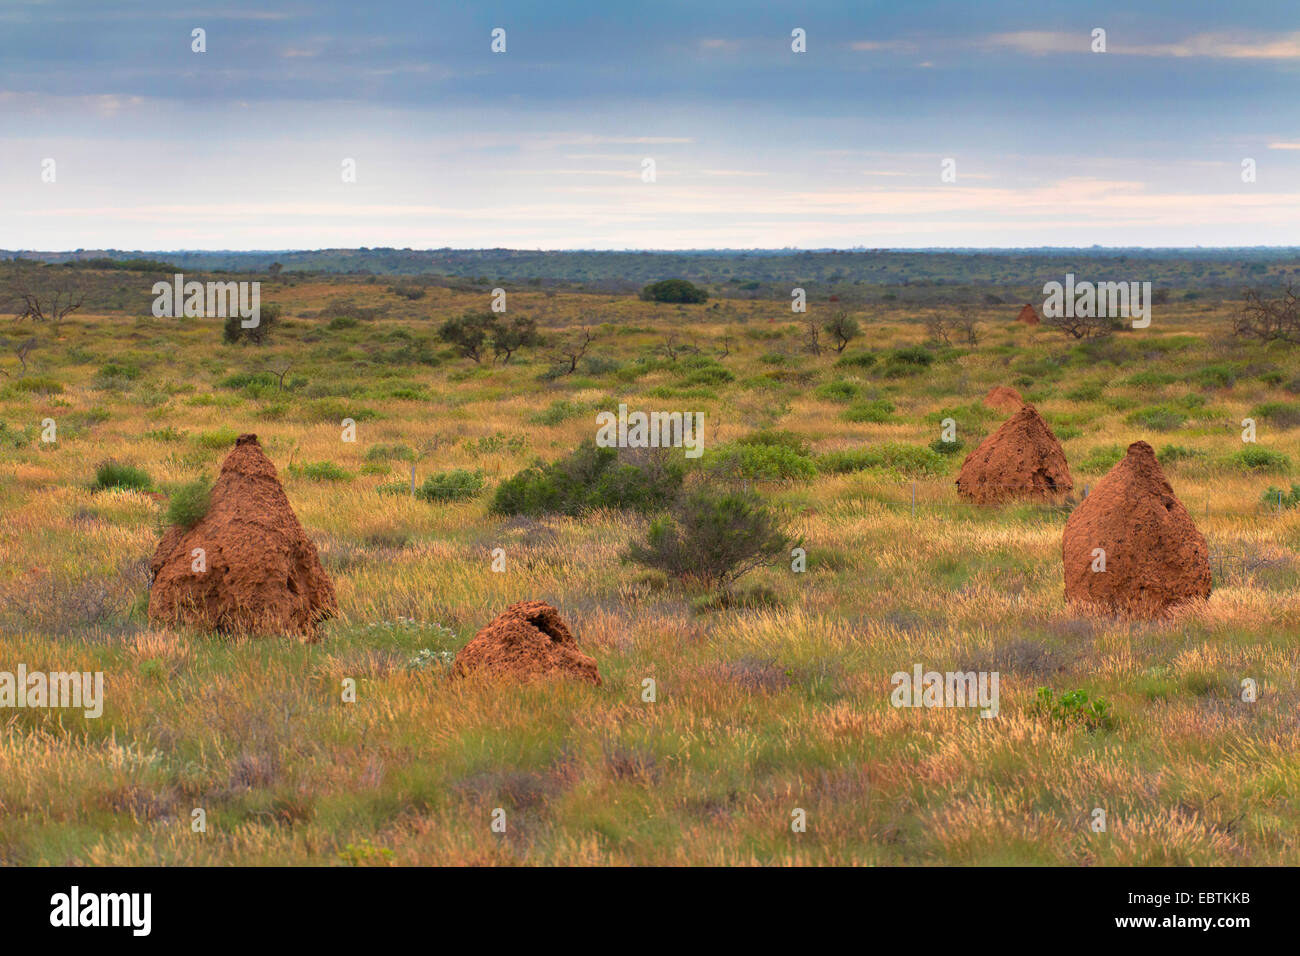 Isoptera (termites), les termites nids dans la steppe, l'Australie, Australie occidentale, Cardabia Banque D'Images